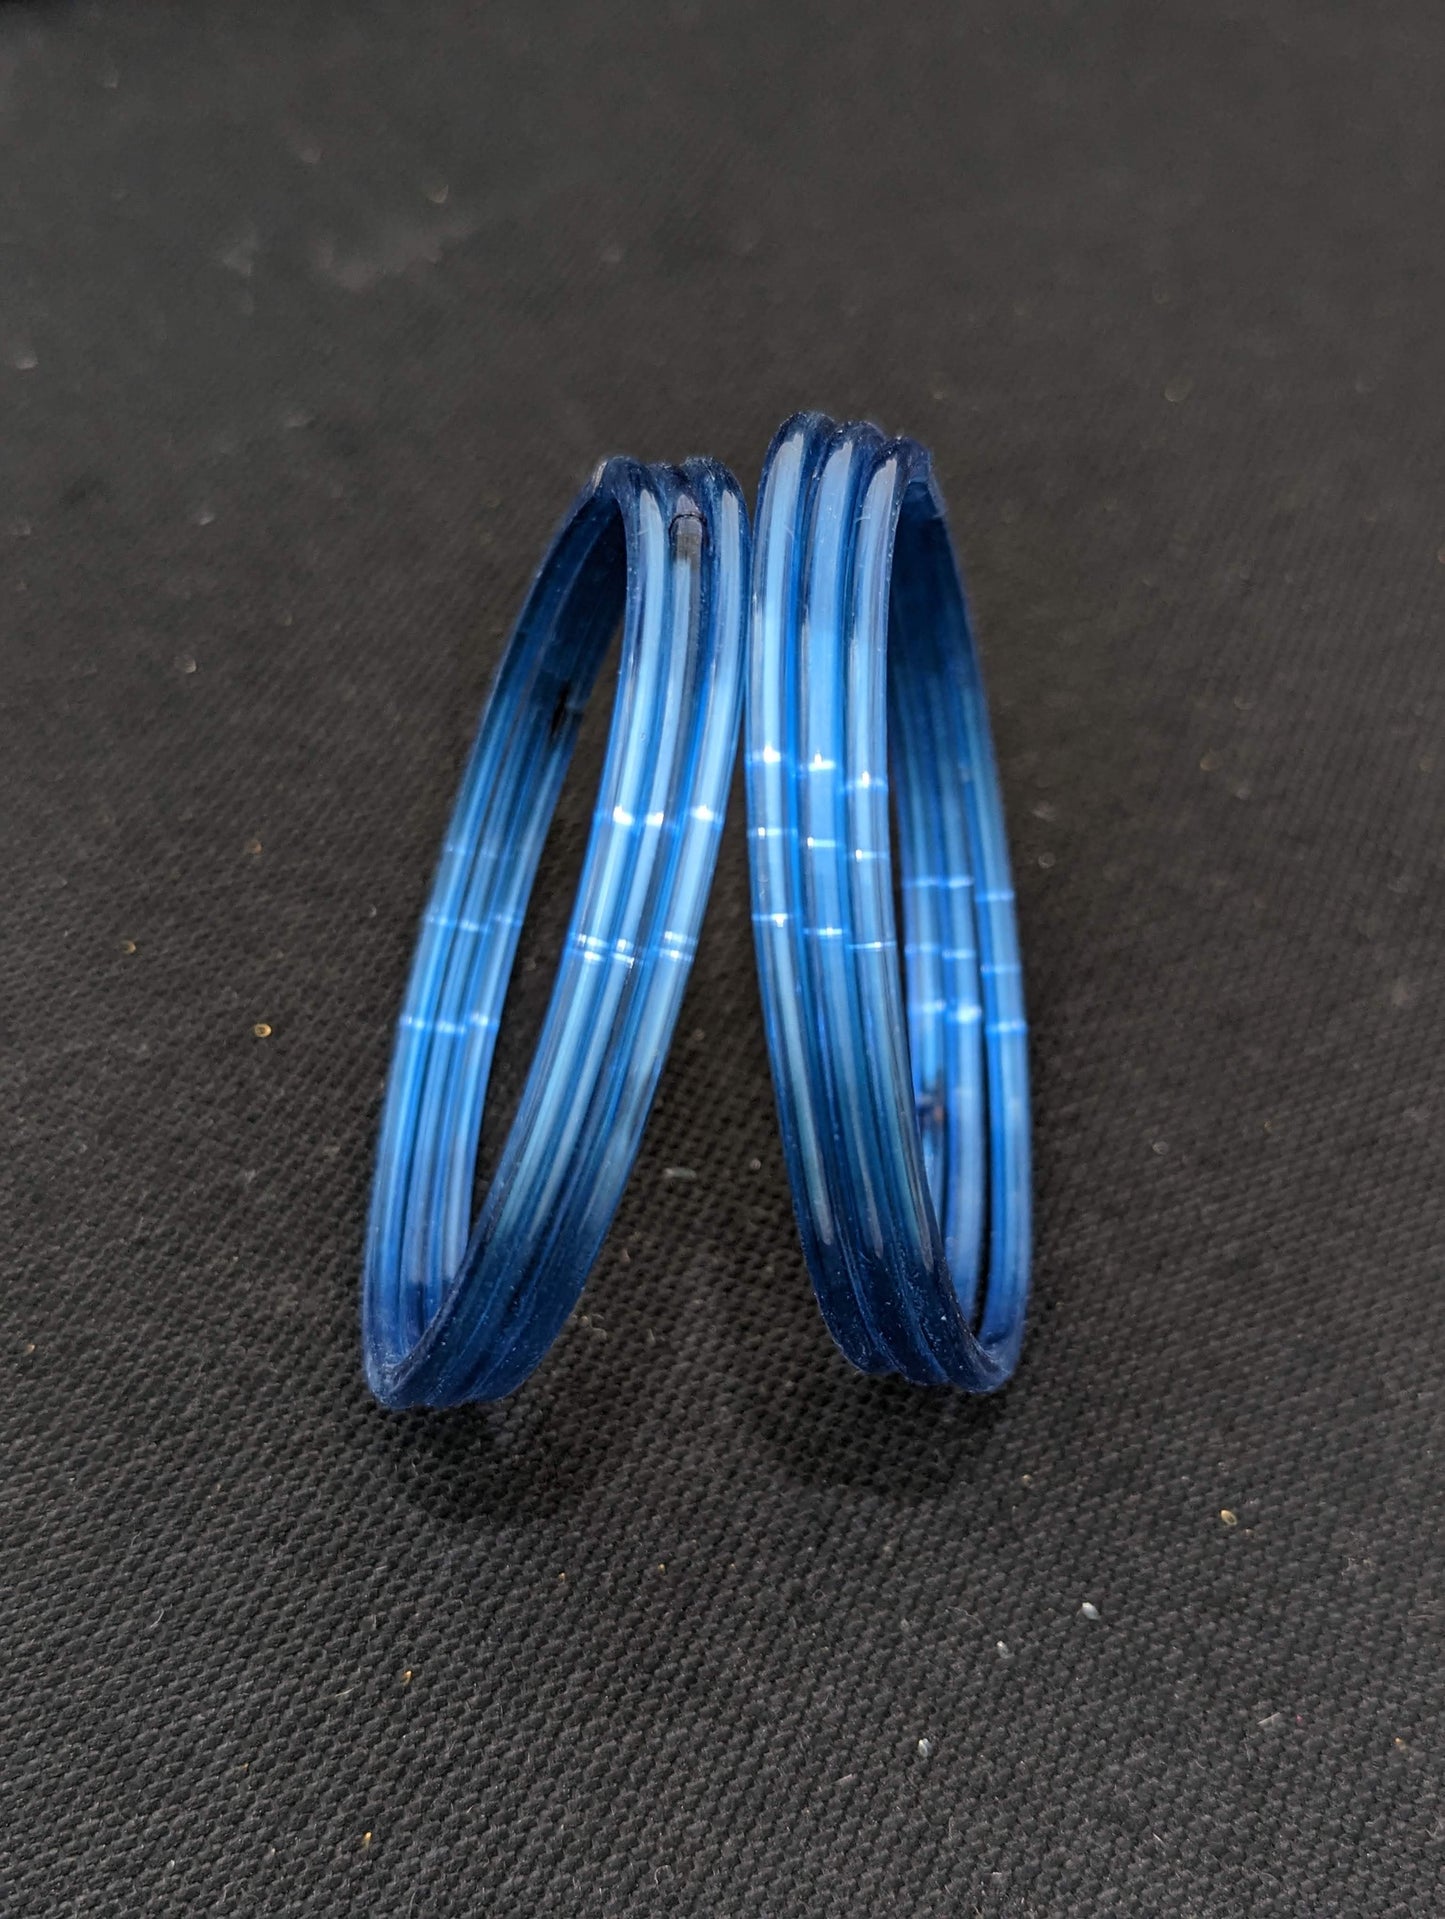 Plain Glass Bangles - Set of 6 bangles / Half dozen bangles